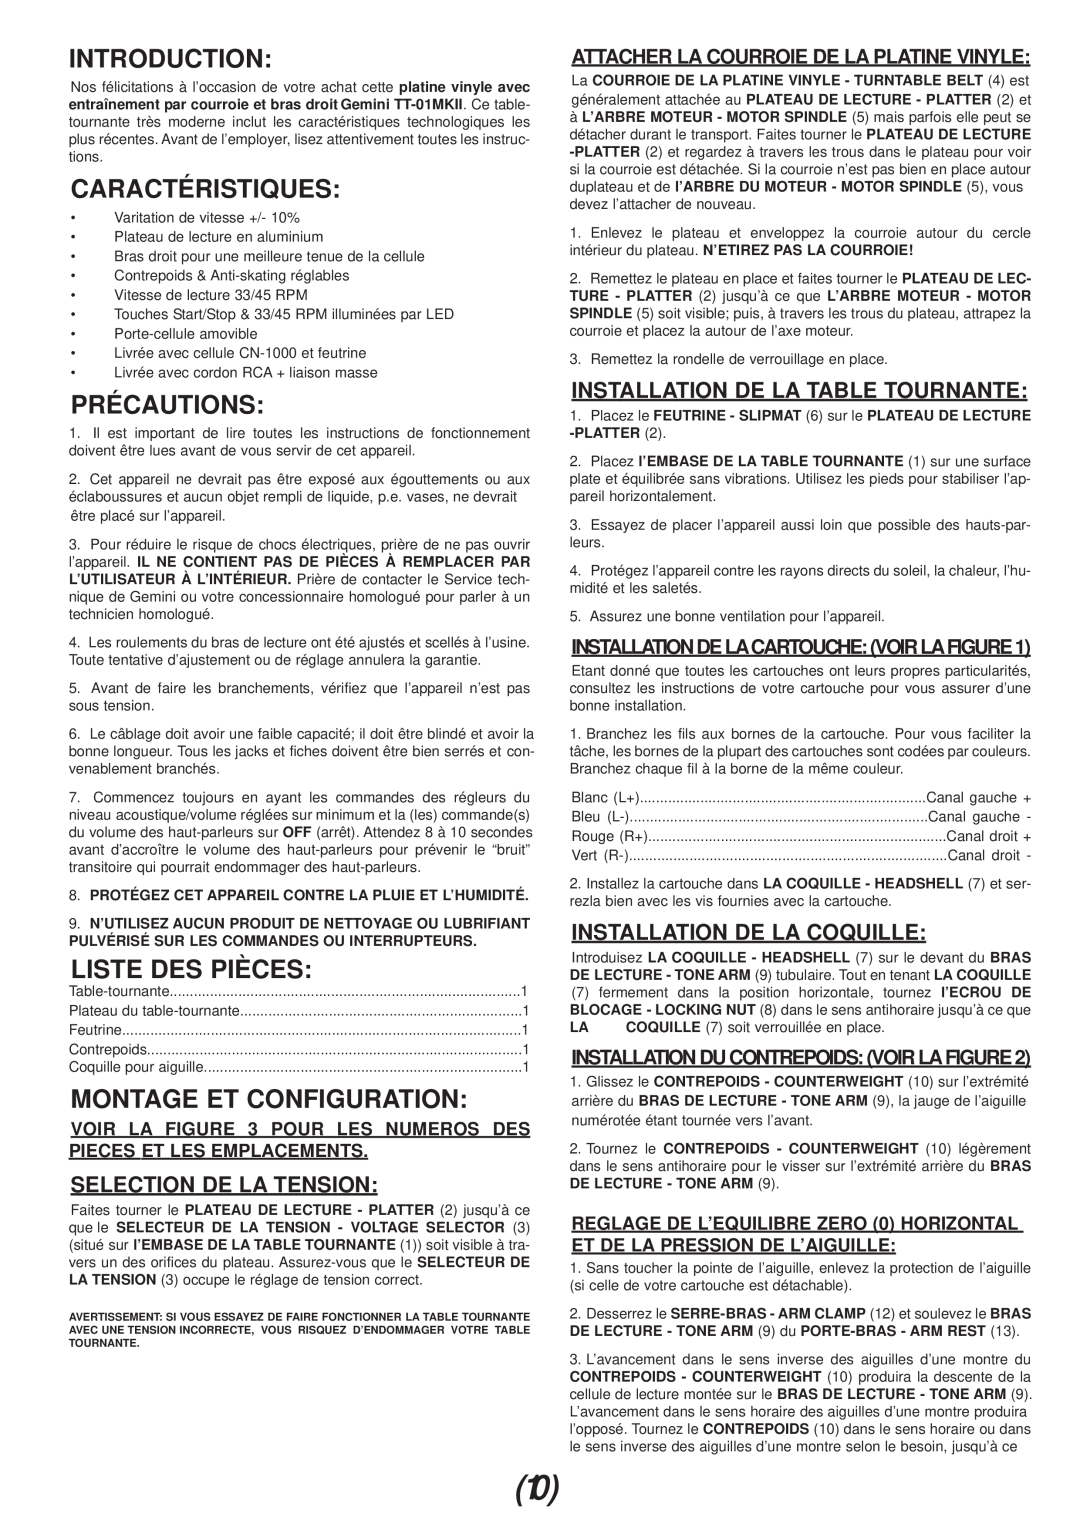 Gemini TT-01mkii manual Caractéristiques, Précautions, Liste Des Pièces, Montage Et Configuration, Selection De La Tension 